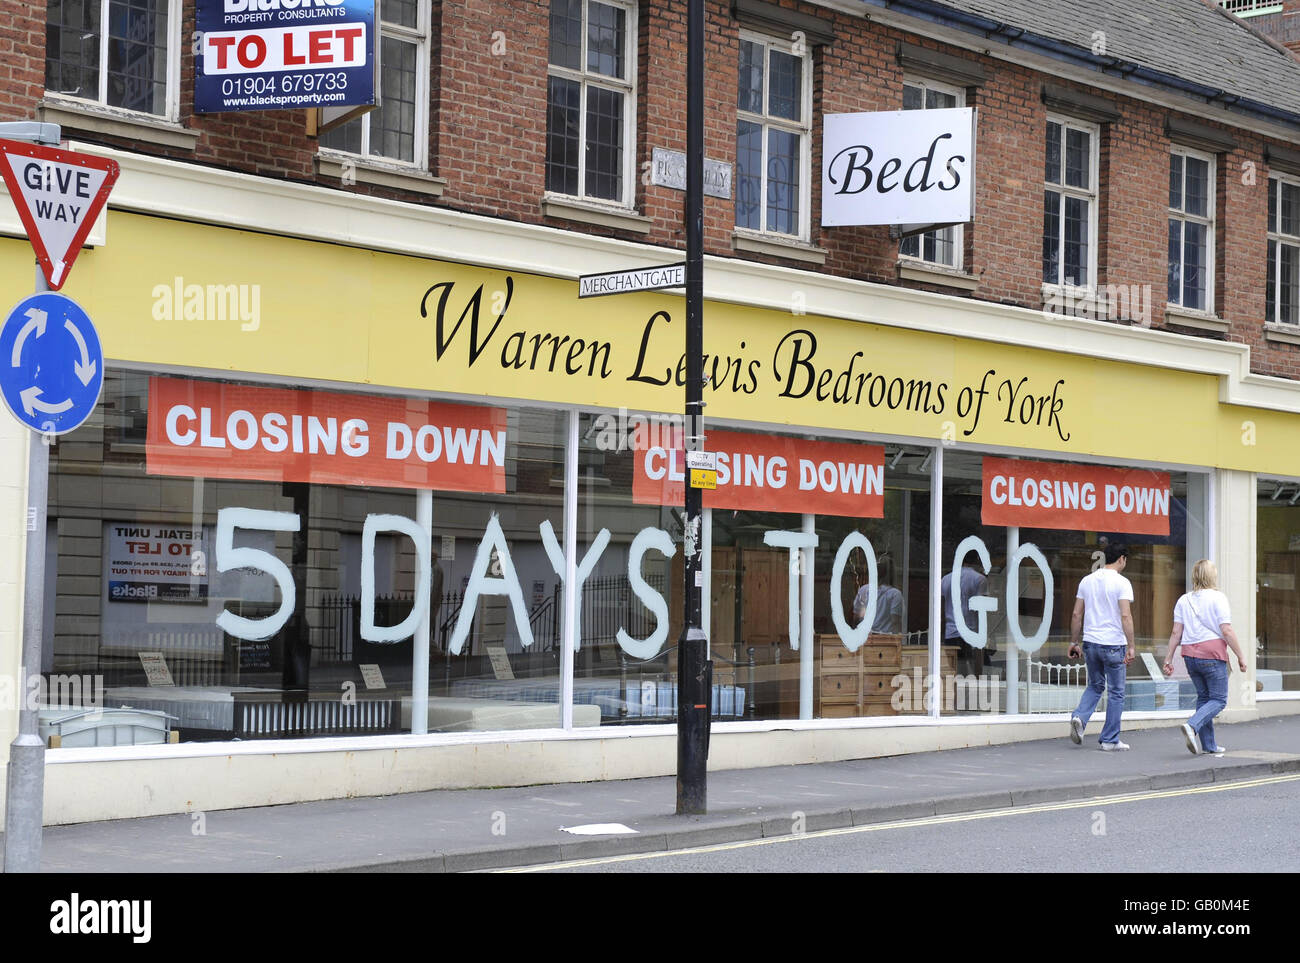 Un magasin de meubles à York annonçant sa vente de clôture. Banque D'Images